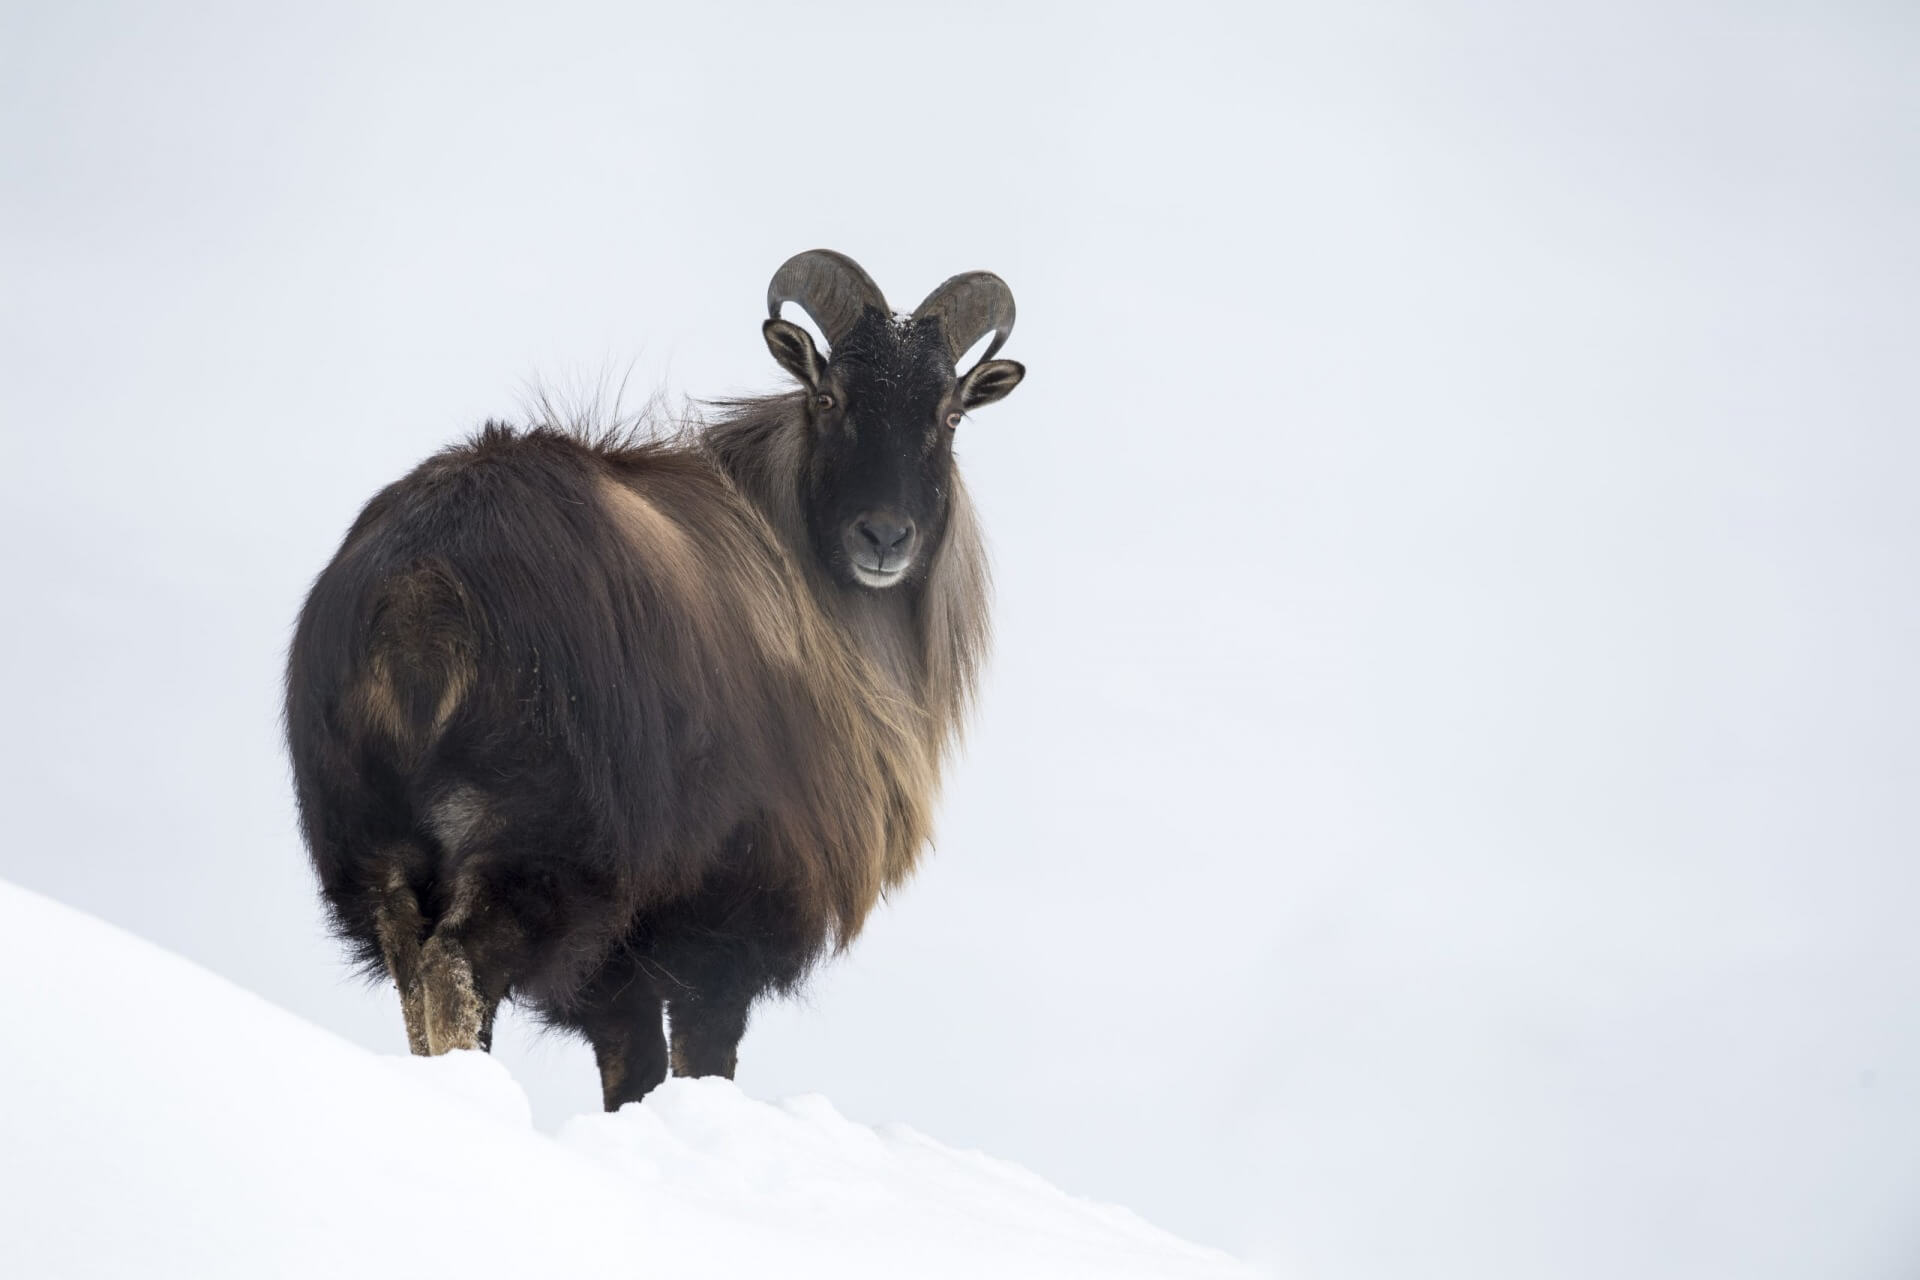 oziorożec alpejski (Capra ibex) zwany również kozłem skalnym jest gatunkiem rozpowszechnionym w Alpach. Spotkamy go w rezerwacie zwierzyny Ferleiten.